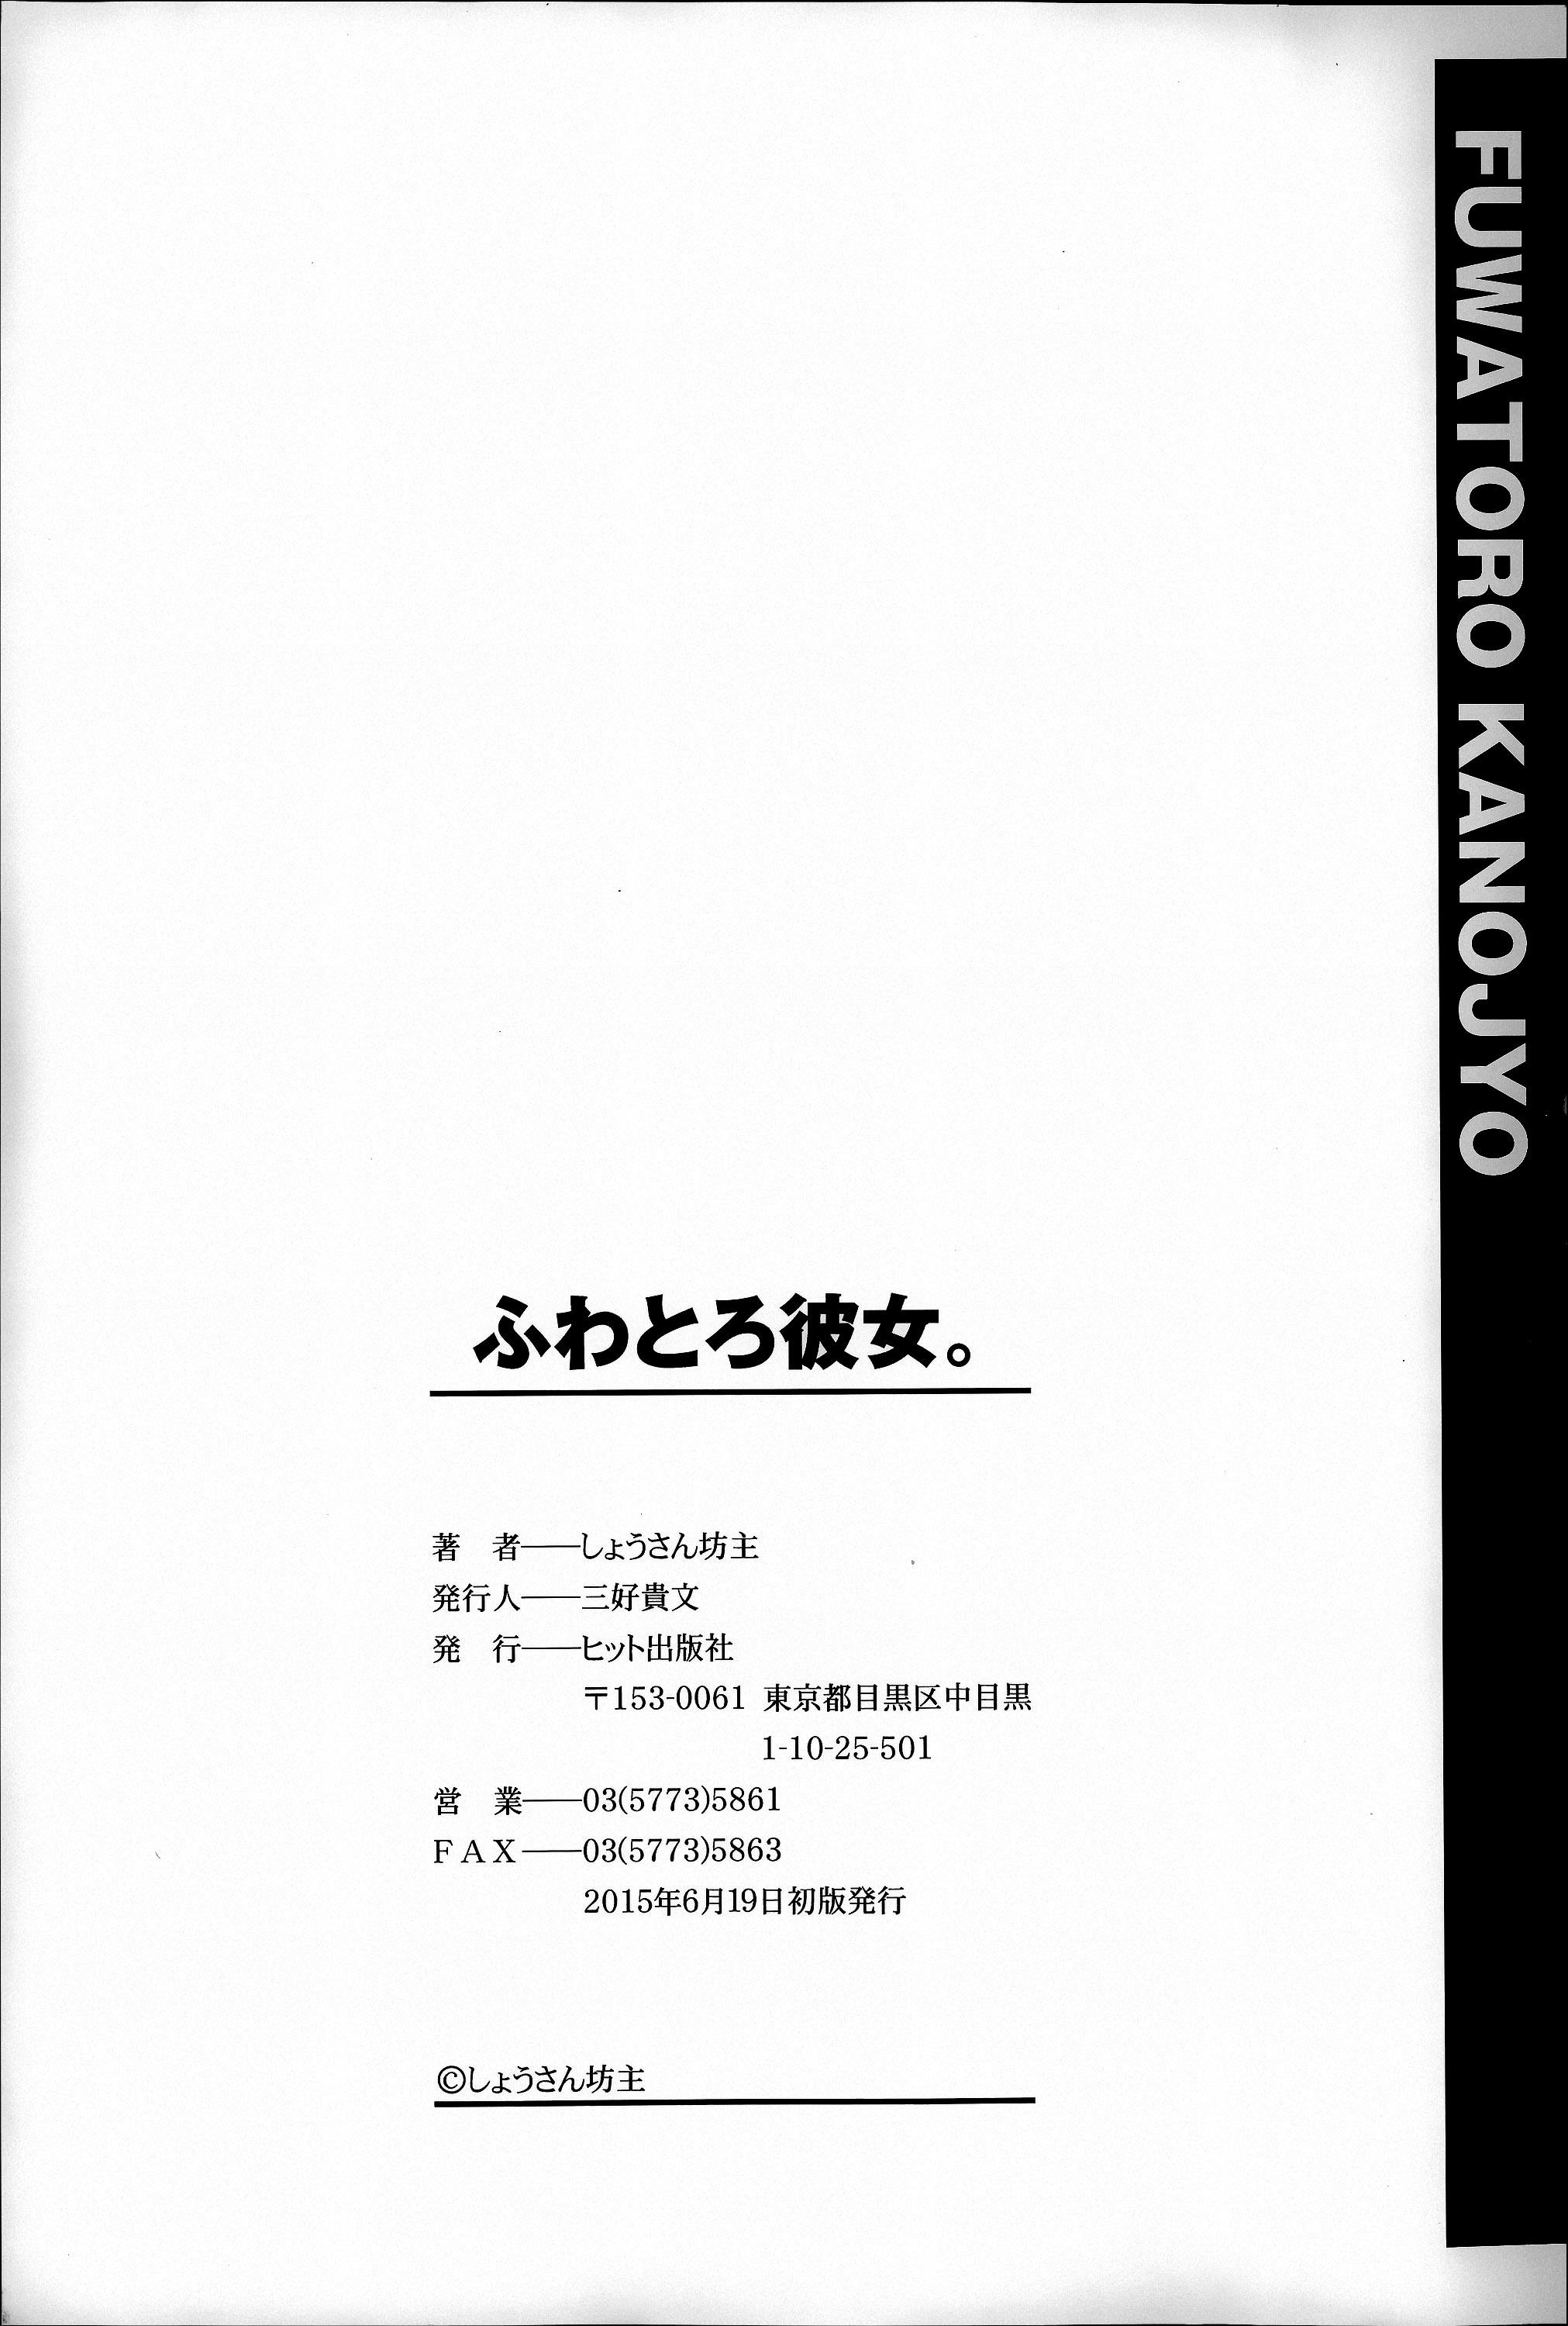 Juicy Fuwatoro Kanojo Nudes - Page 202